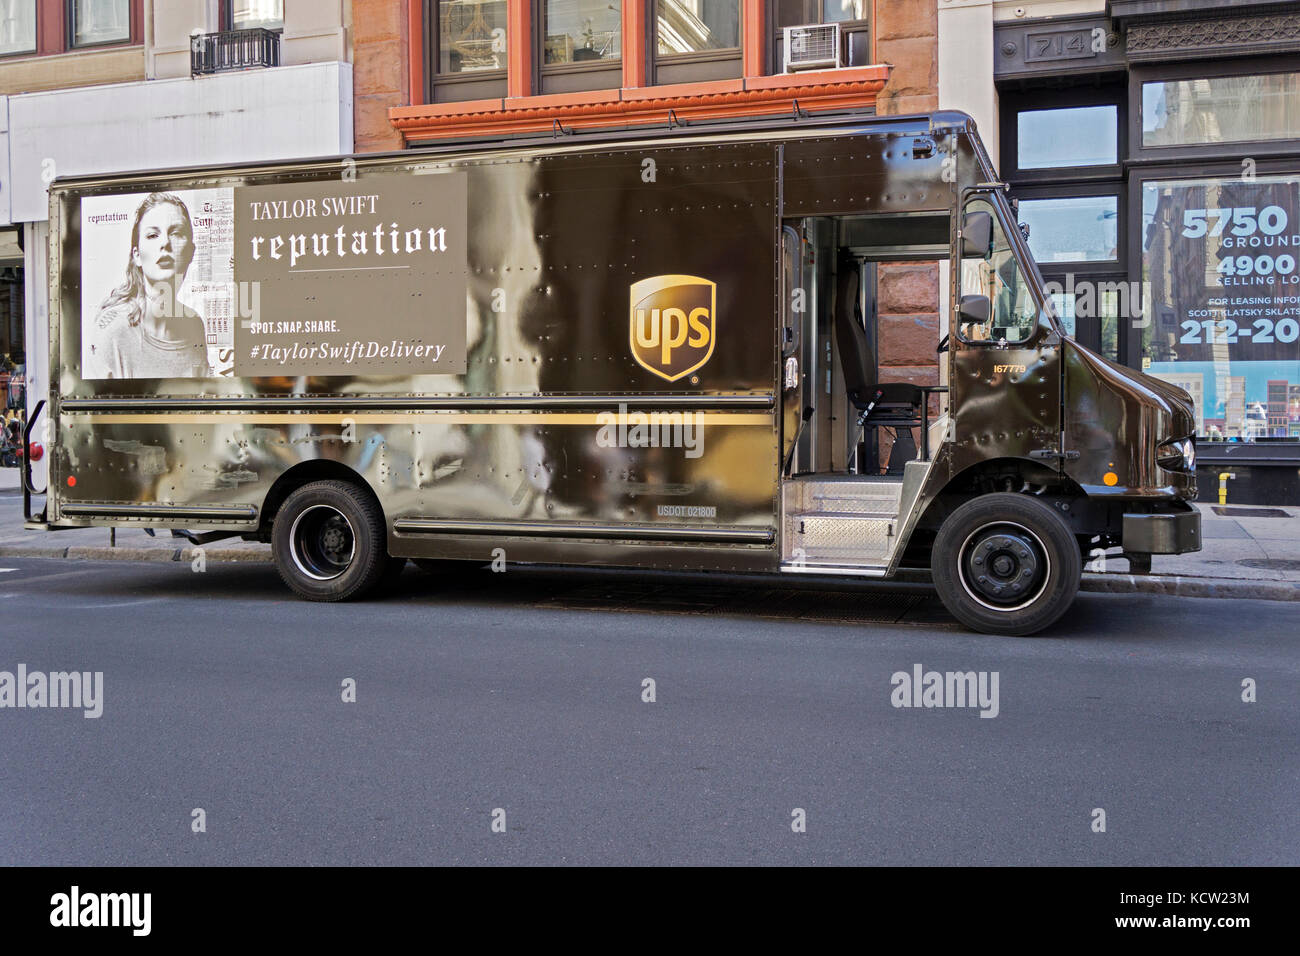 Un annuncio per Taylor Swift's album sul lato di un UPS carrello su Broadway in Manhattan inferiore, STATI UNITI D'AMERICA. Foto Stock